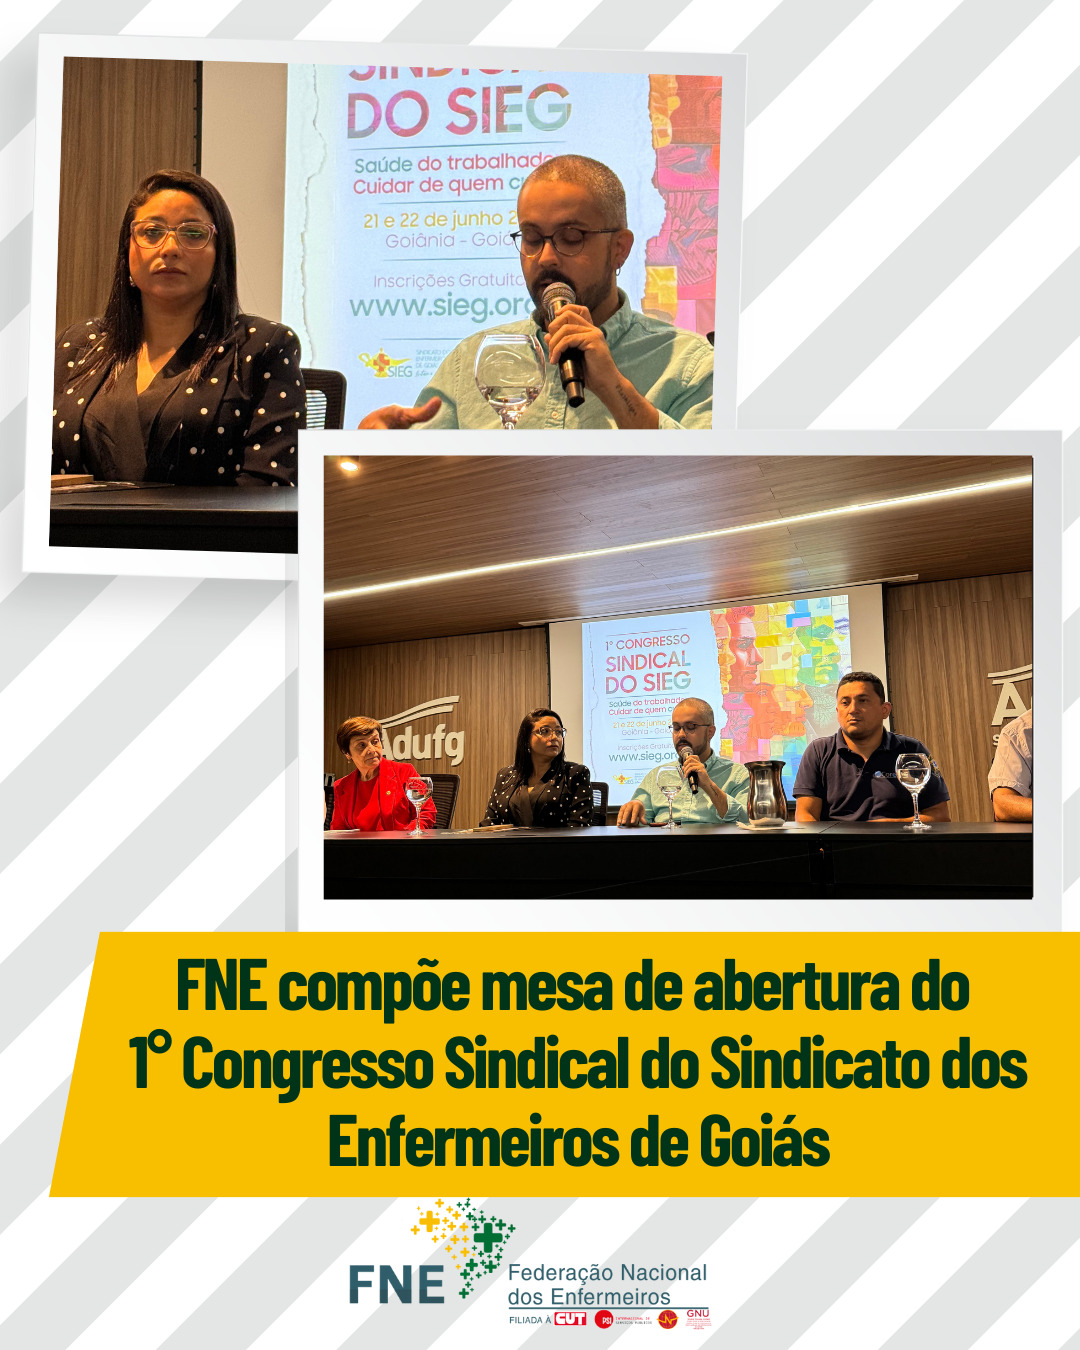 FNE presente no 1º Congresso Sindical do Sindicato dos Enfermeiros de Goiás